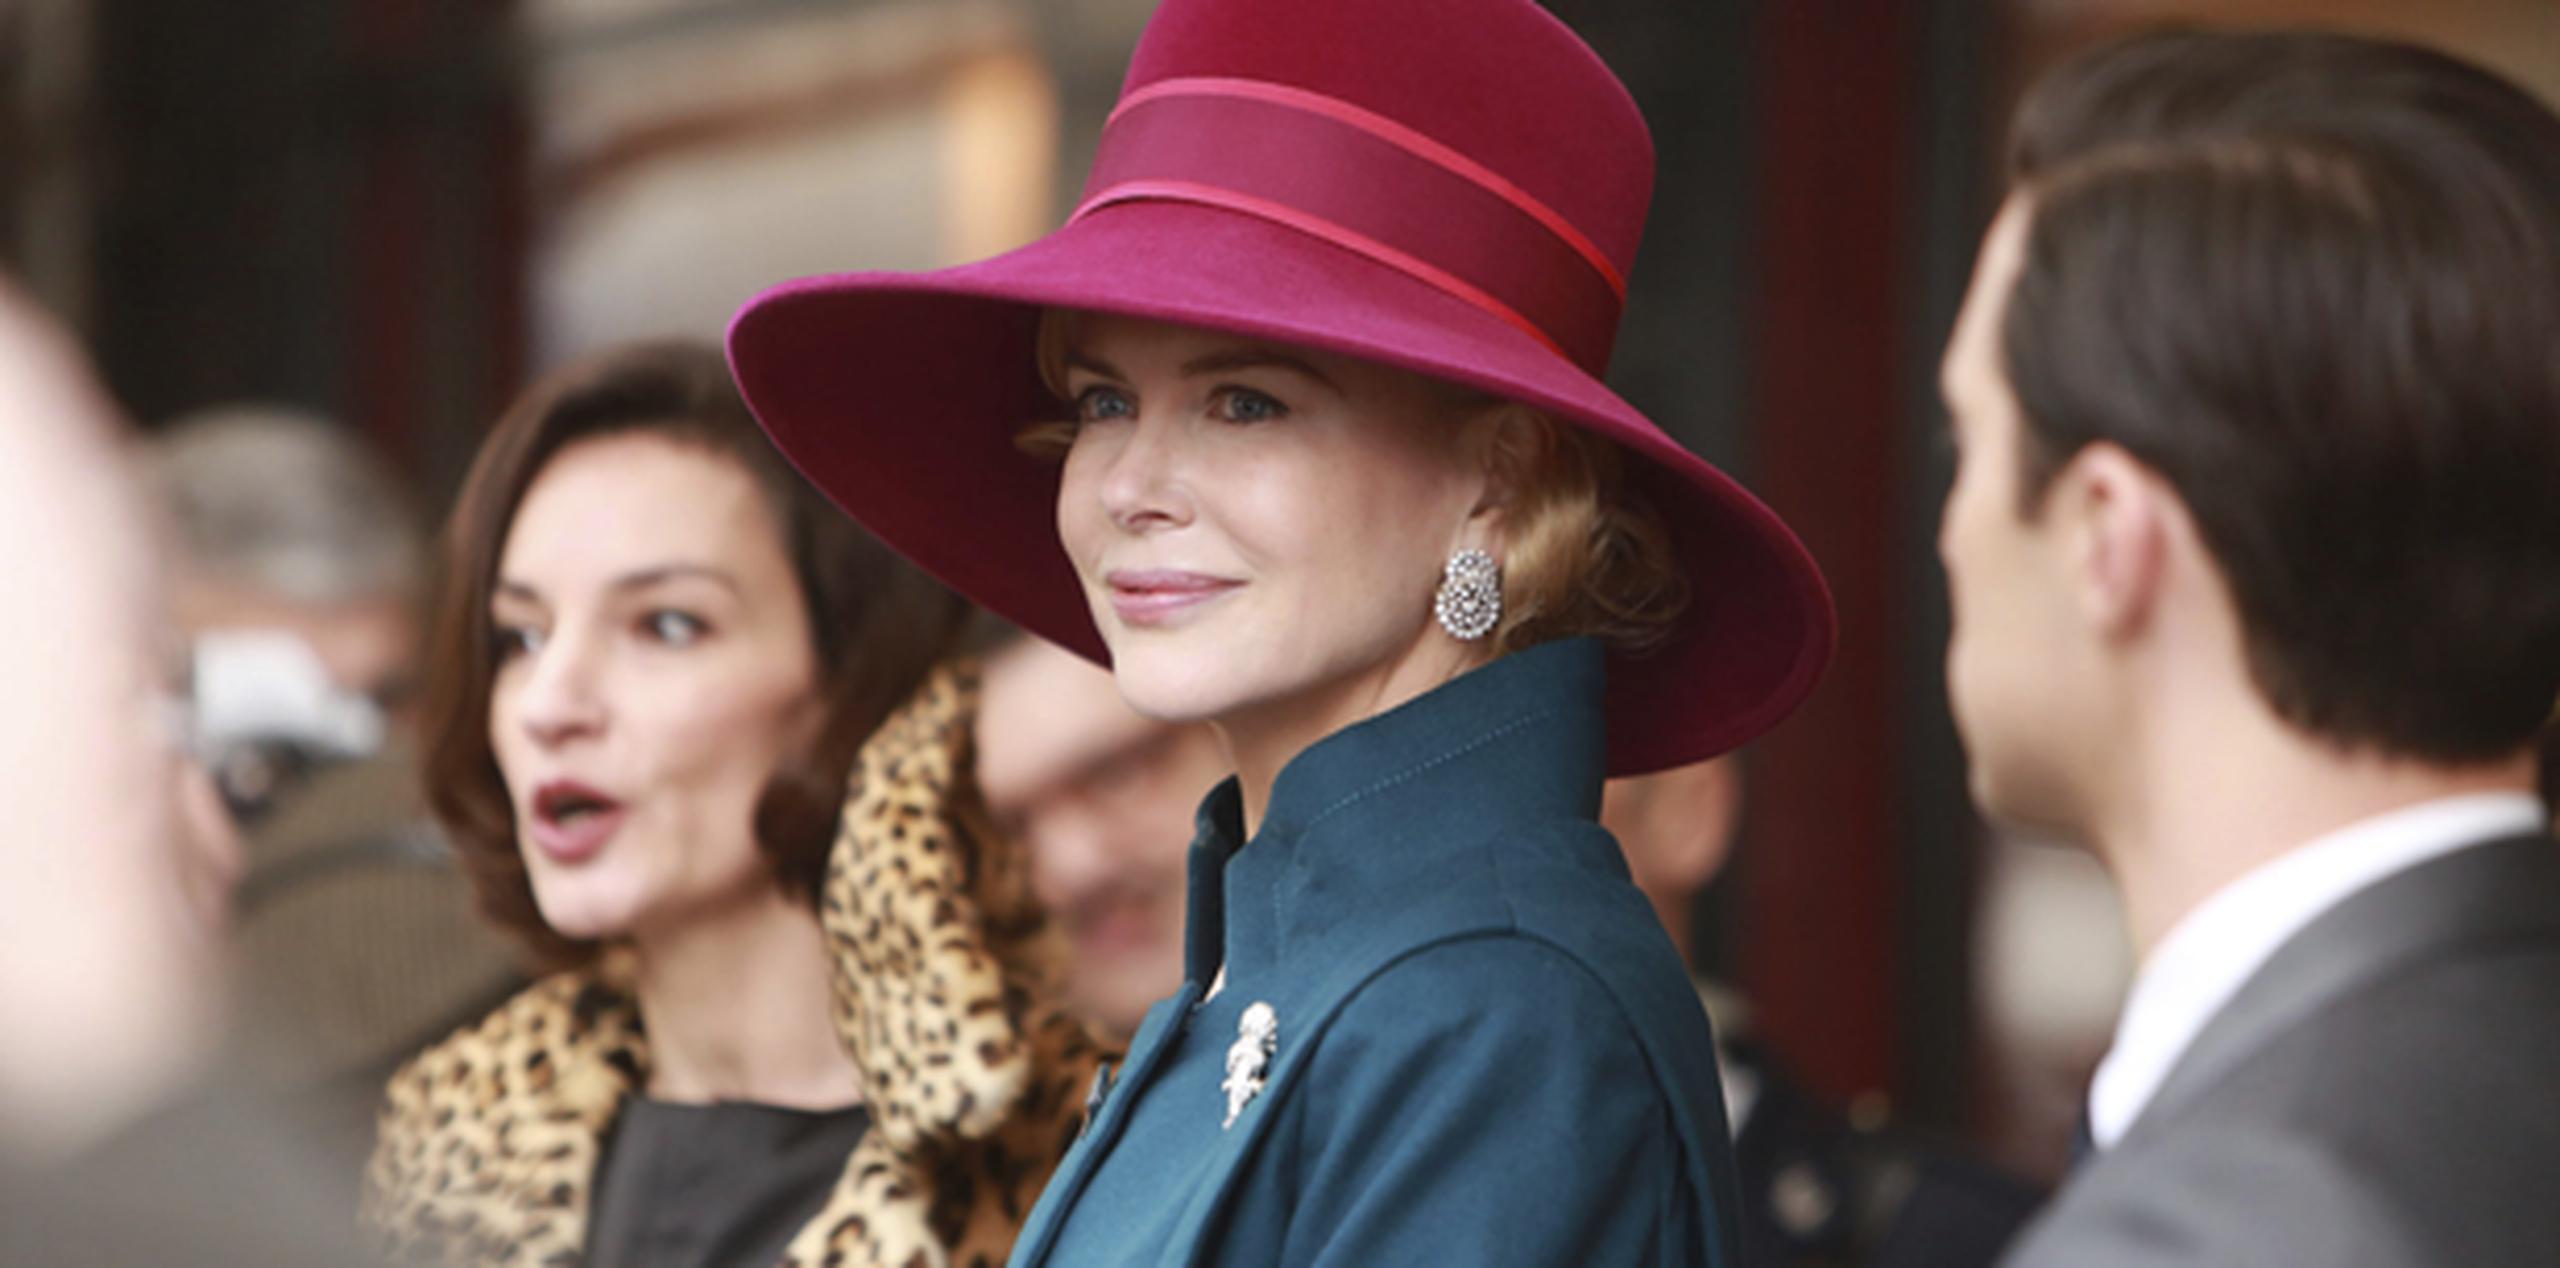 La elegancia de Grace Kelly quedará patente en la película "Grace of Mónaco", dirigida por el francés Olivier Dahan. (Archivo)